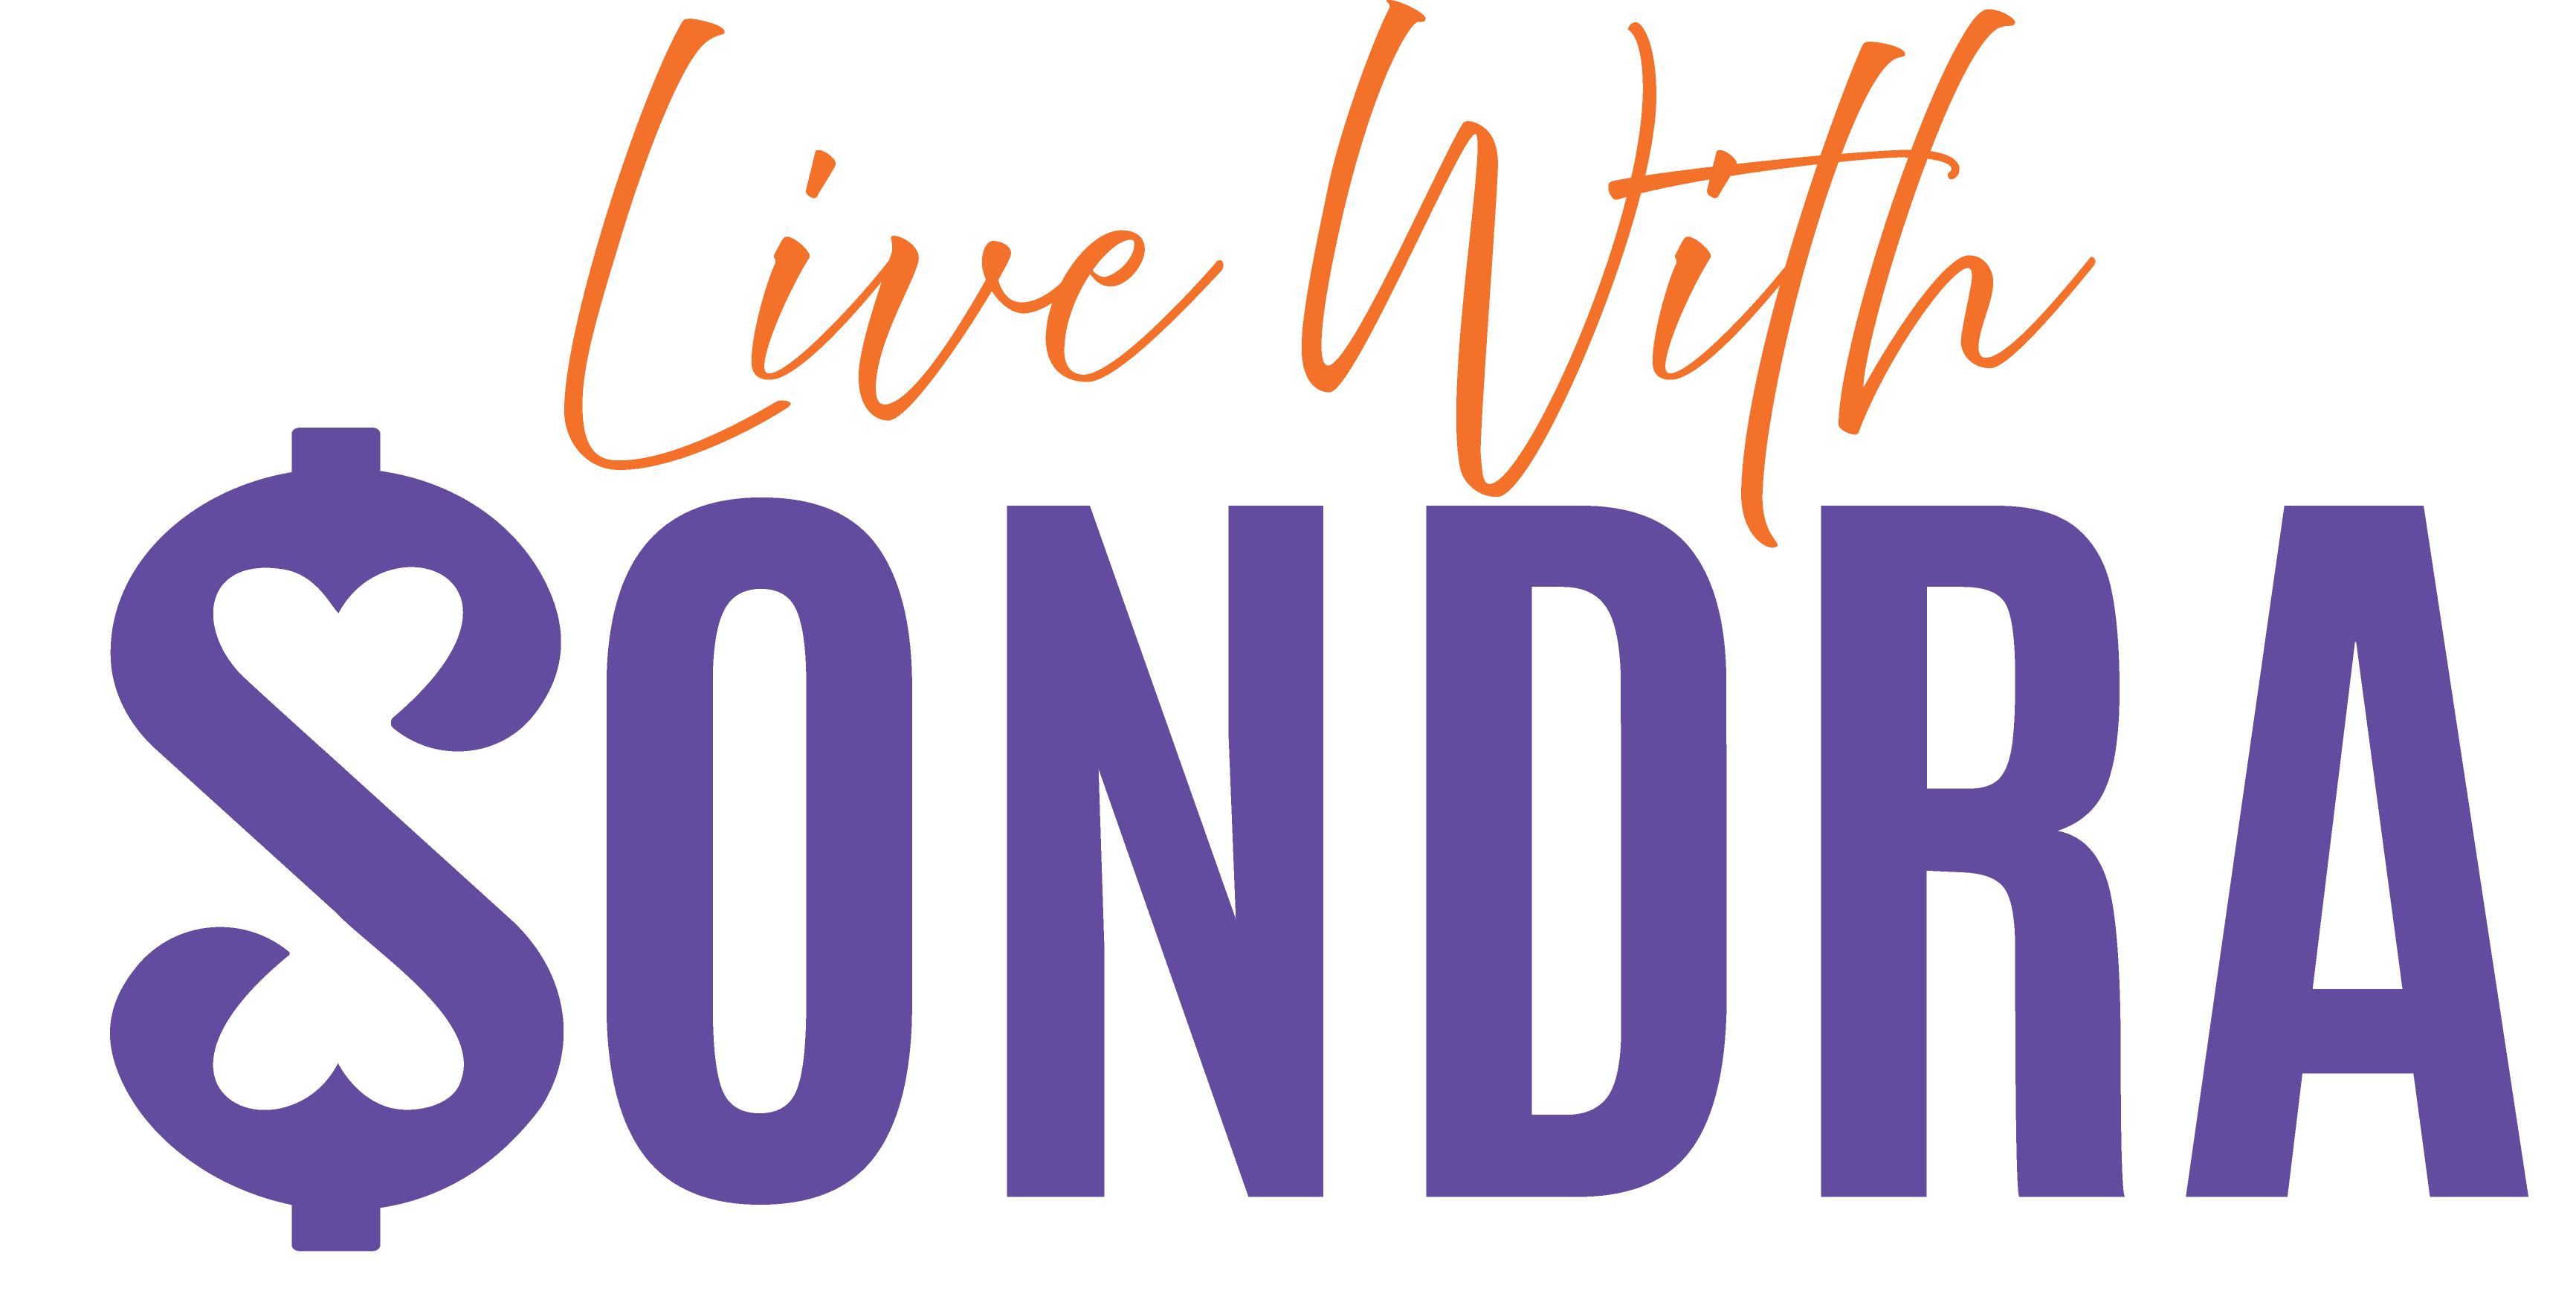 Live with sondra logo